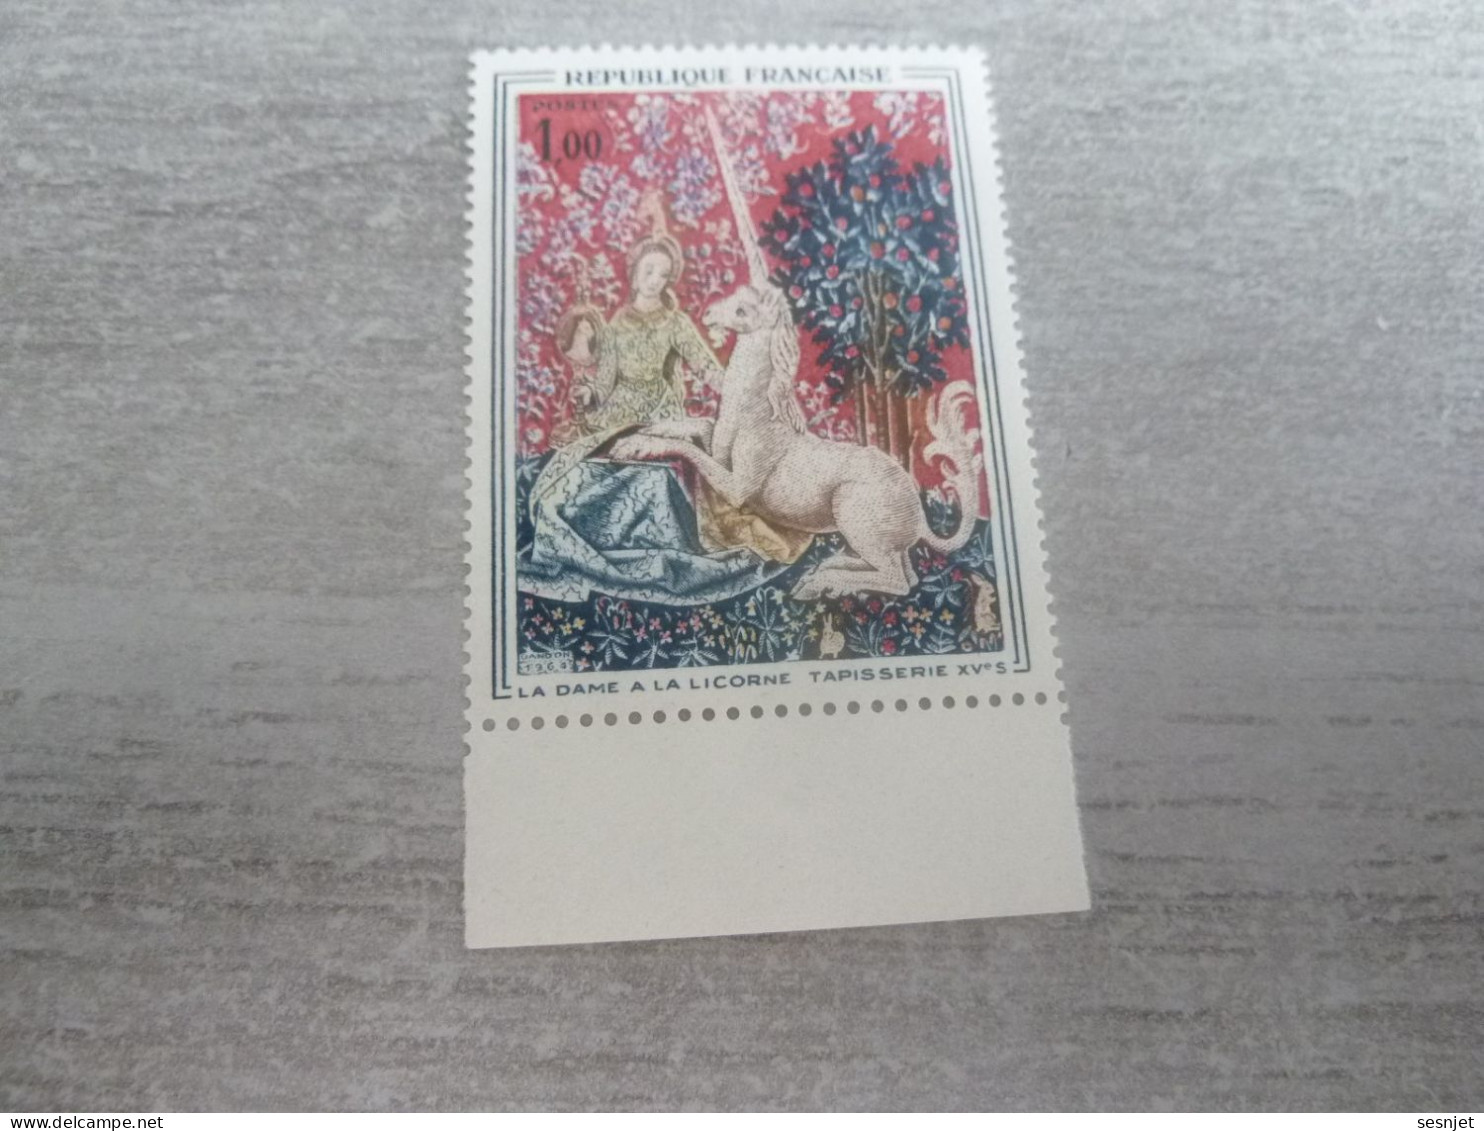 Musée De Cluny - La Dame à La Licorne - 1f. - Yt 1425 - Polychrome - Neuf Sans Trace De Charnière - Année 1964 - - Unused Stamps